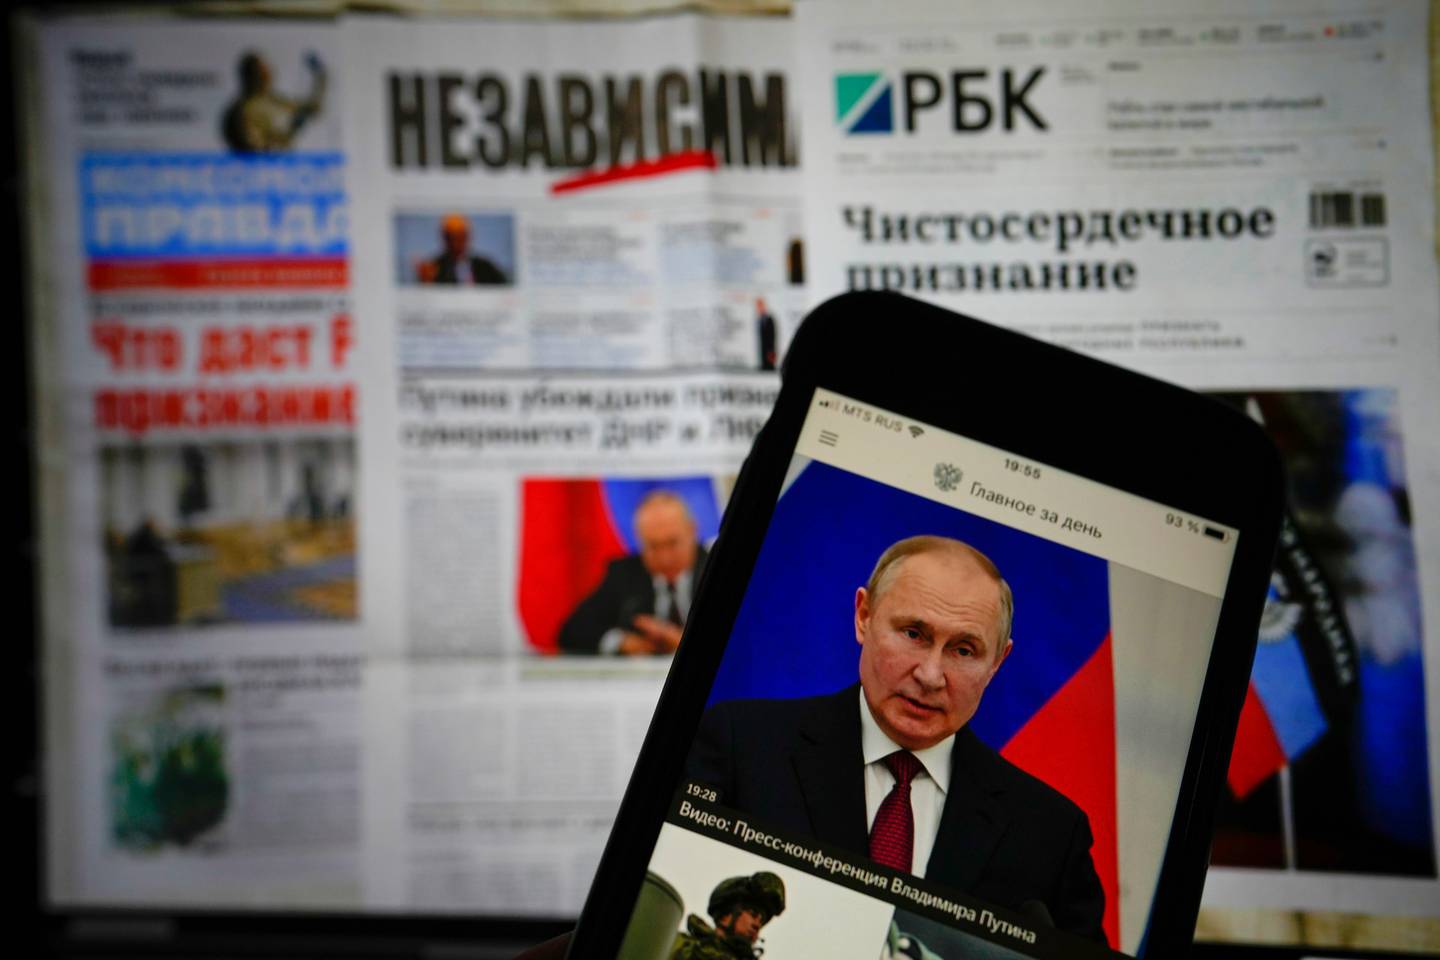 俄罗斯政府报纸的应用程序显示在 iPhone 屏幕上，显示俄罗斯总统弗拉基米尔·普京在克里姆林宫的演讲。 照片/美联社